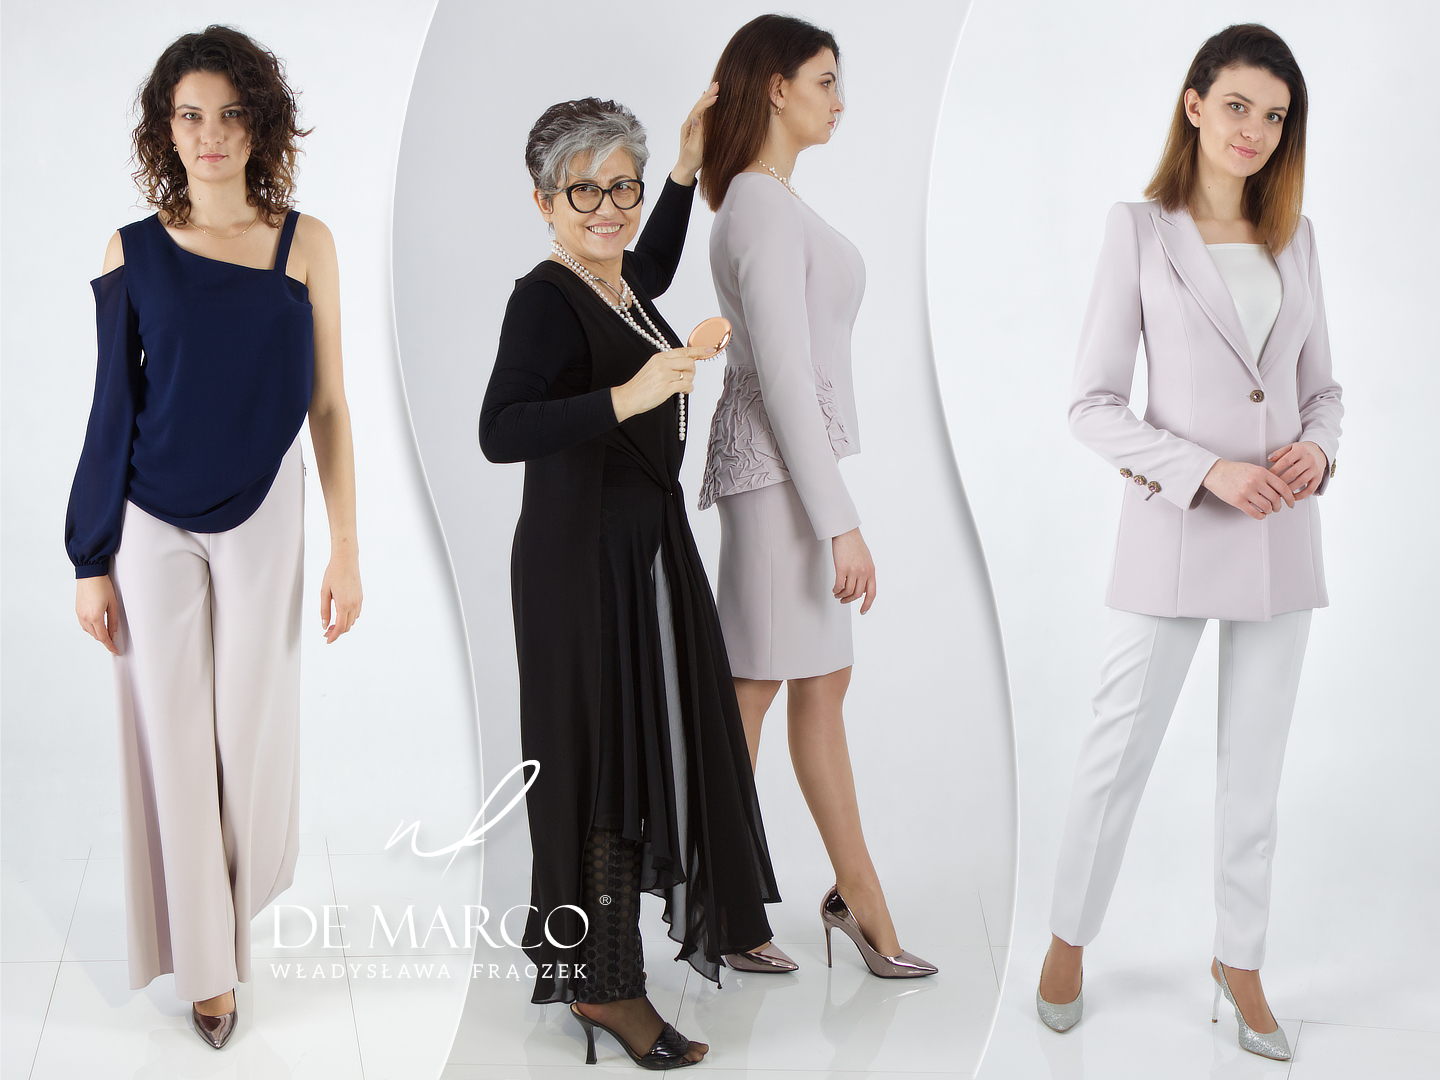 Polska ekskluzywna odzież damska De Marco luksusowe ubrania szyte na miarę on-line